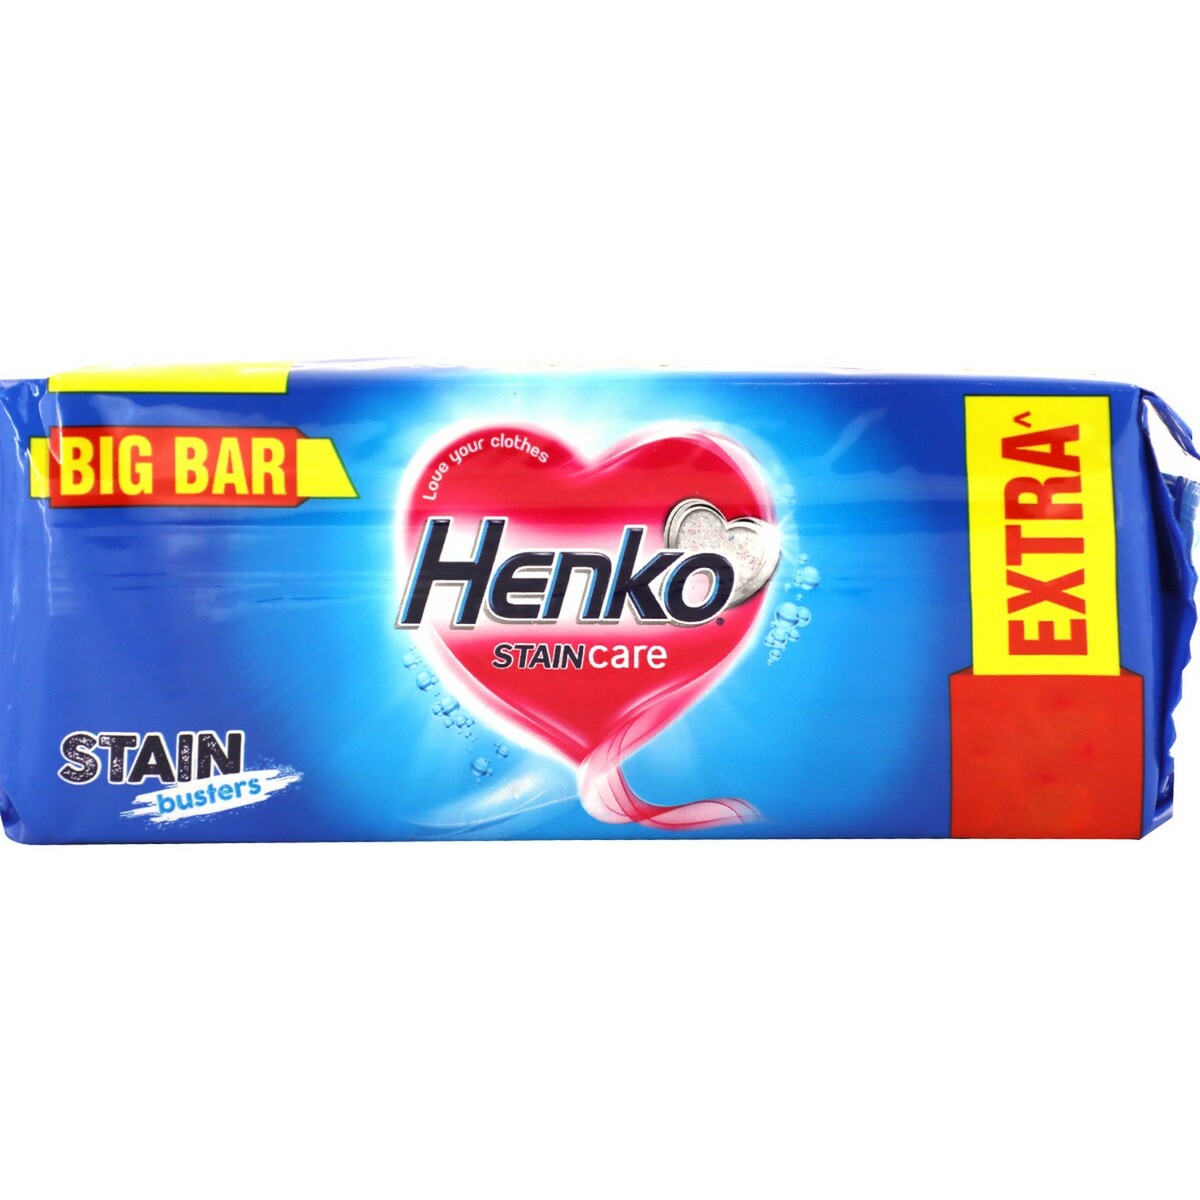 Henko Stain Champion Detergent Cake 250g